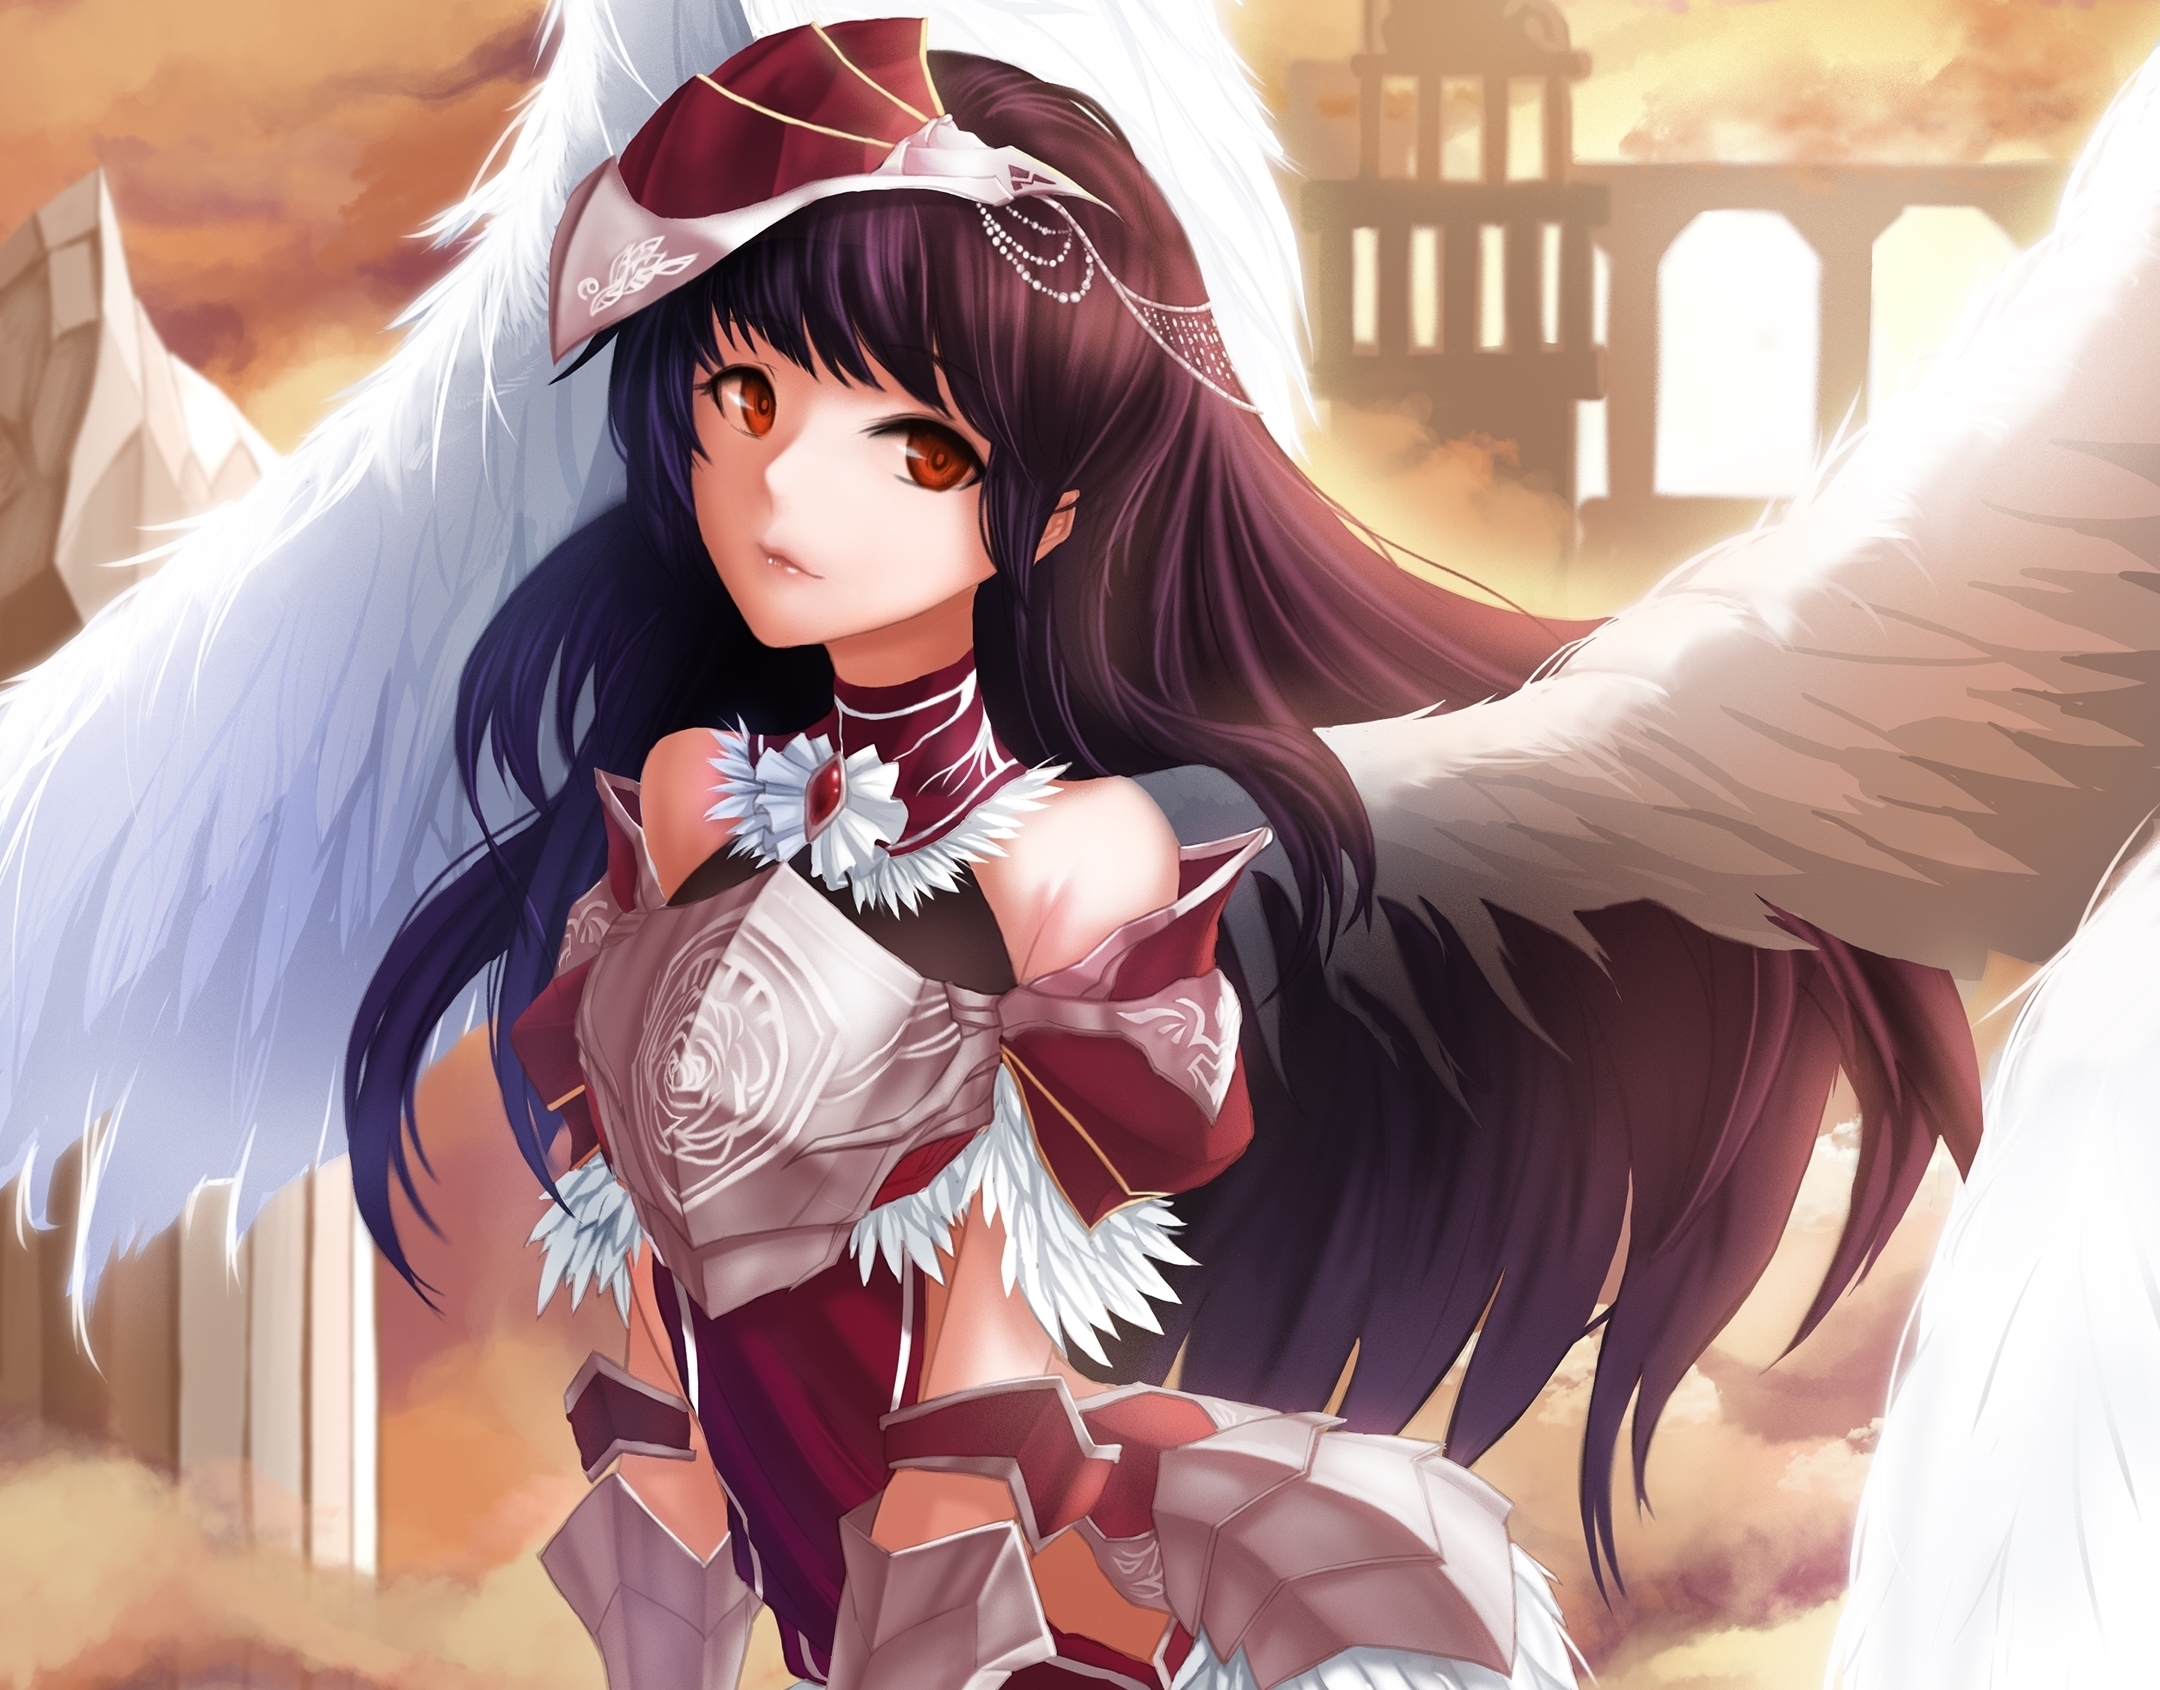 Garota de anime com asas de anjo segurando uma boneca em seus